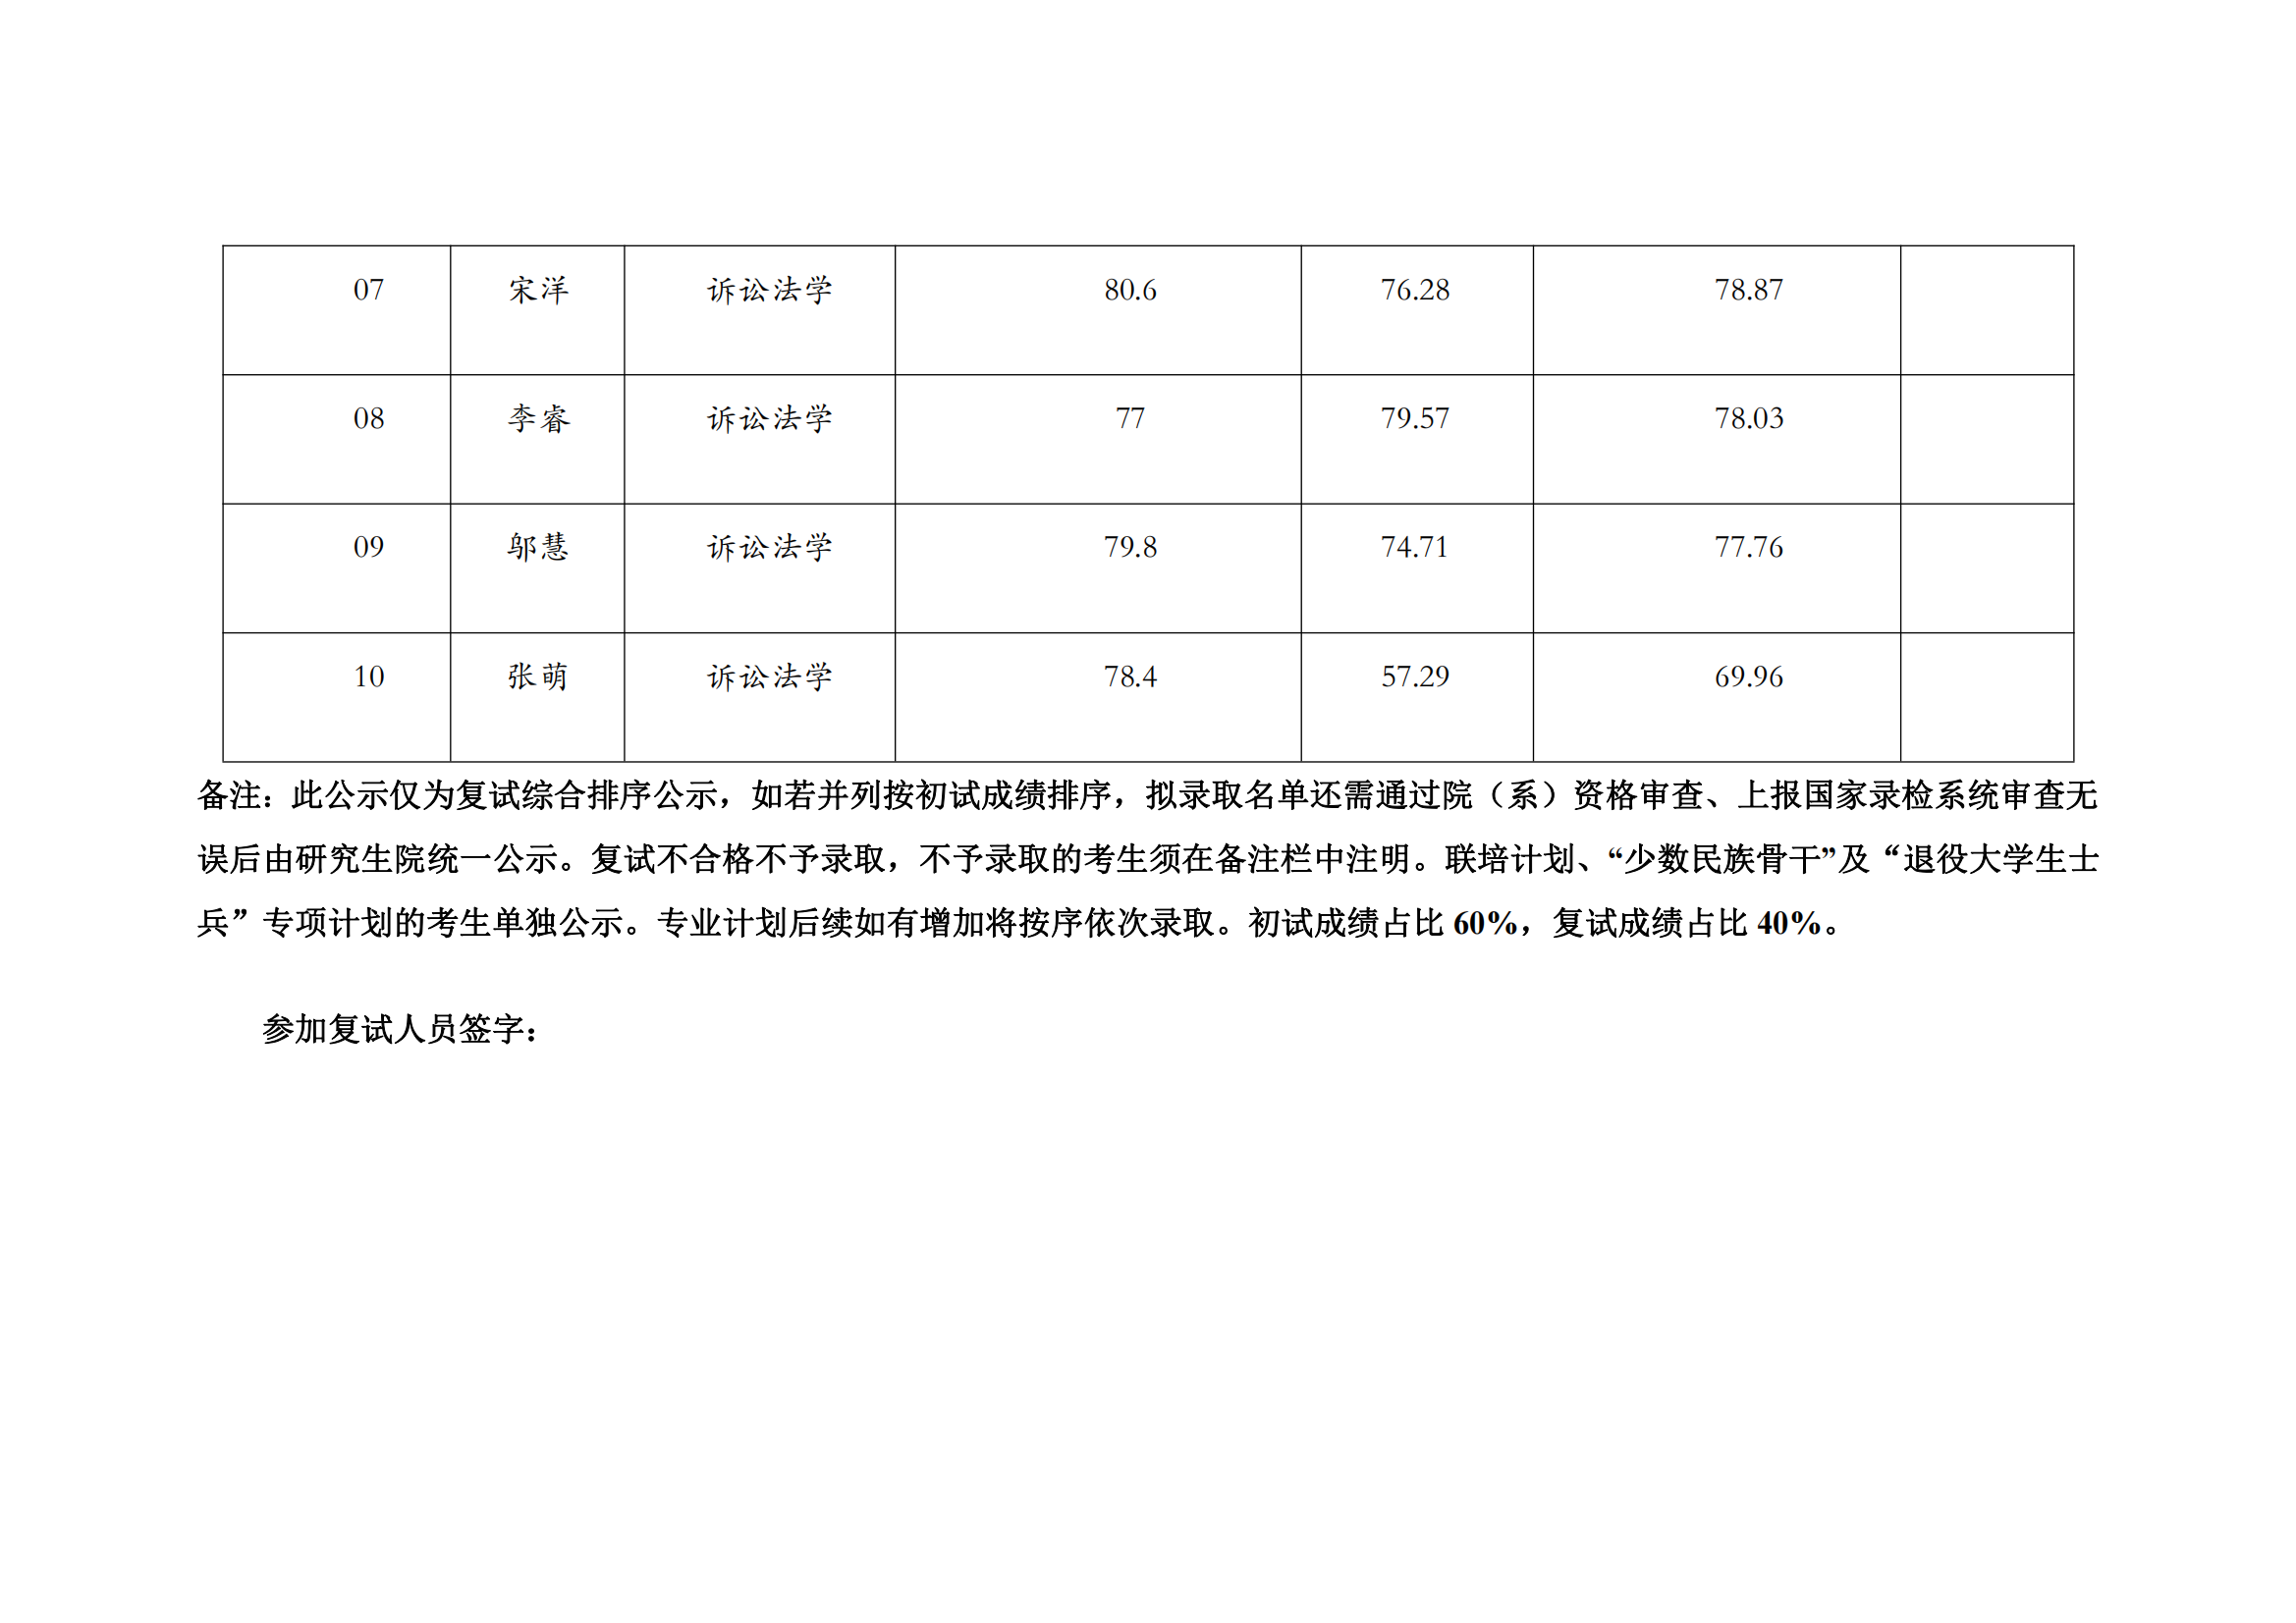 郑州大学2022年硕士研究生复试结果综合排序公示表【诉讼法】_01.png